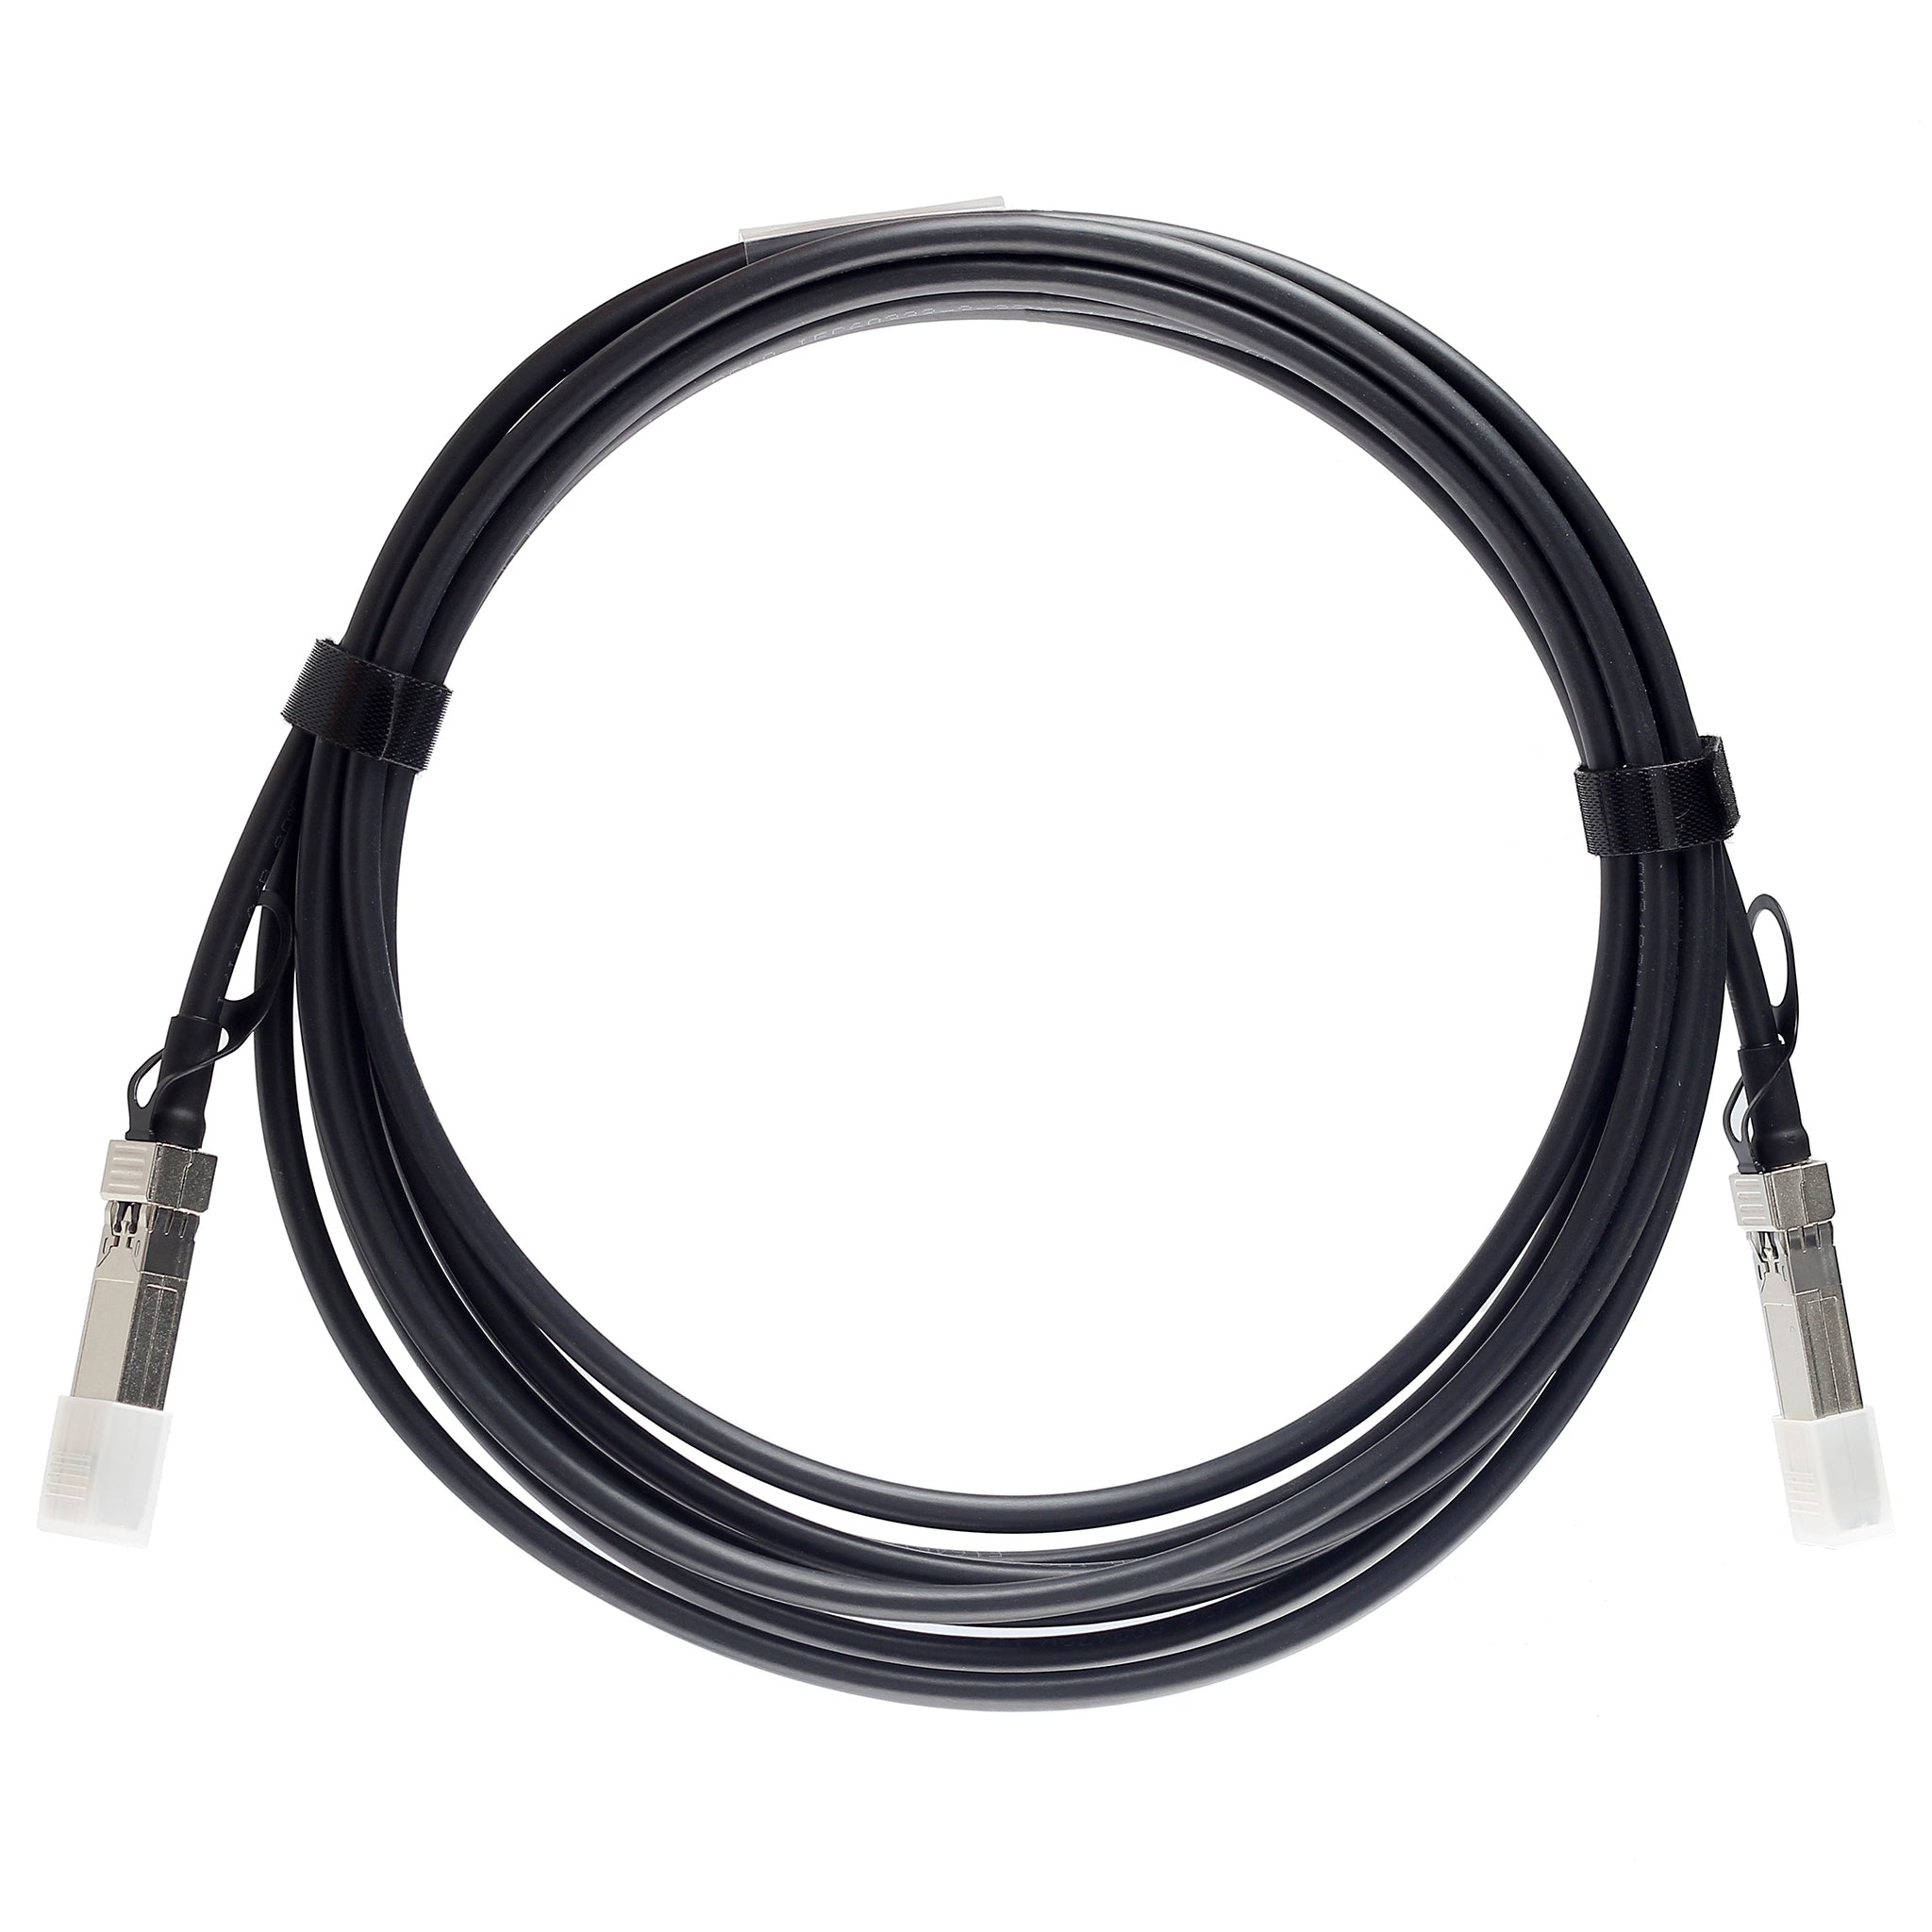 QSFP-40G-C2M-C - 2m Alcatel-Lucent (Nokia) Compatible 40G QSFP+ Passive Direct Attach Copper Twinax Cable